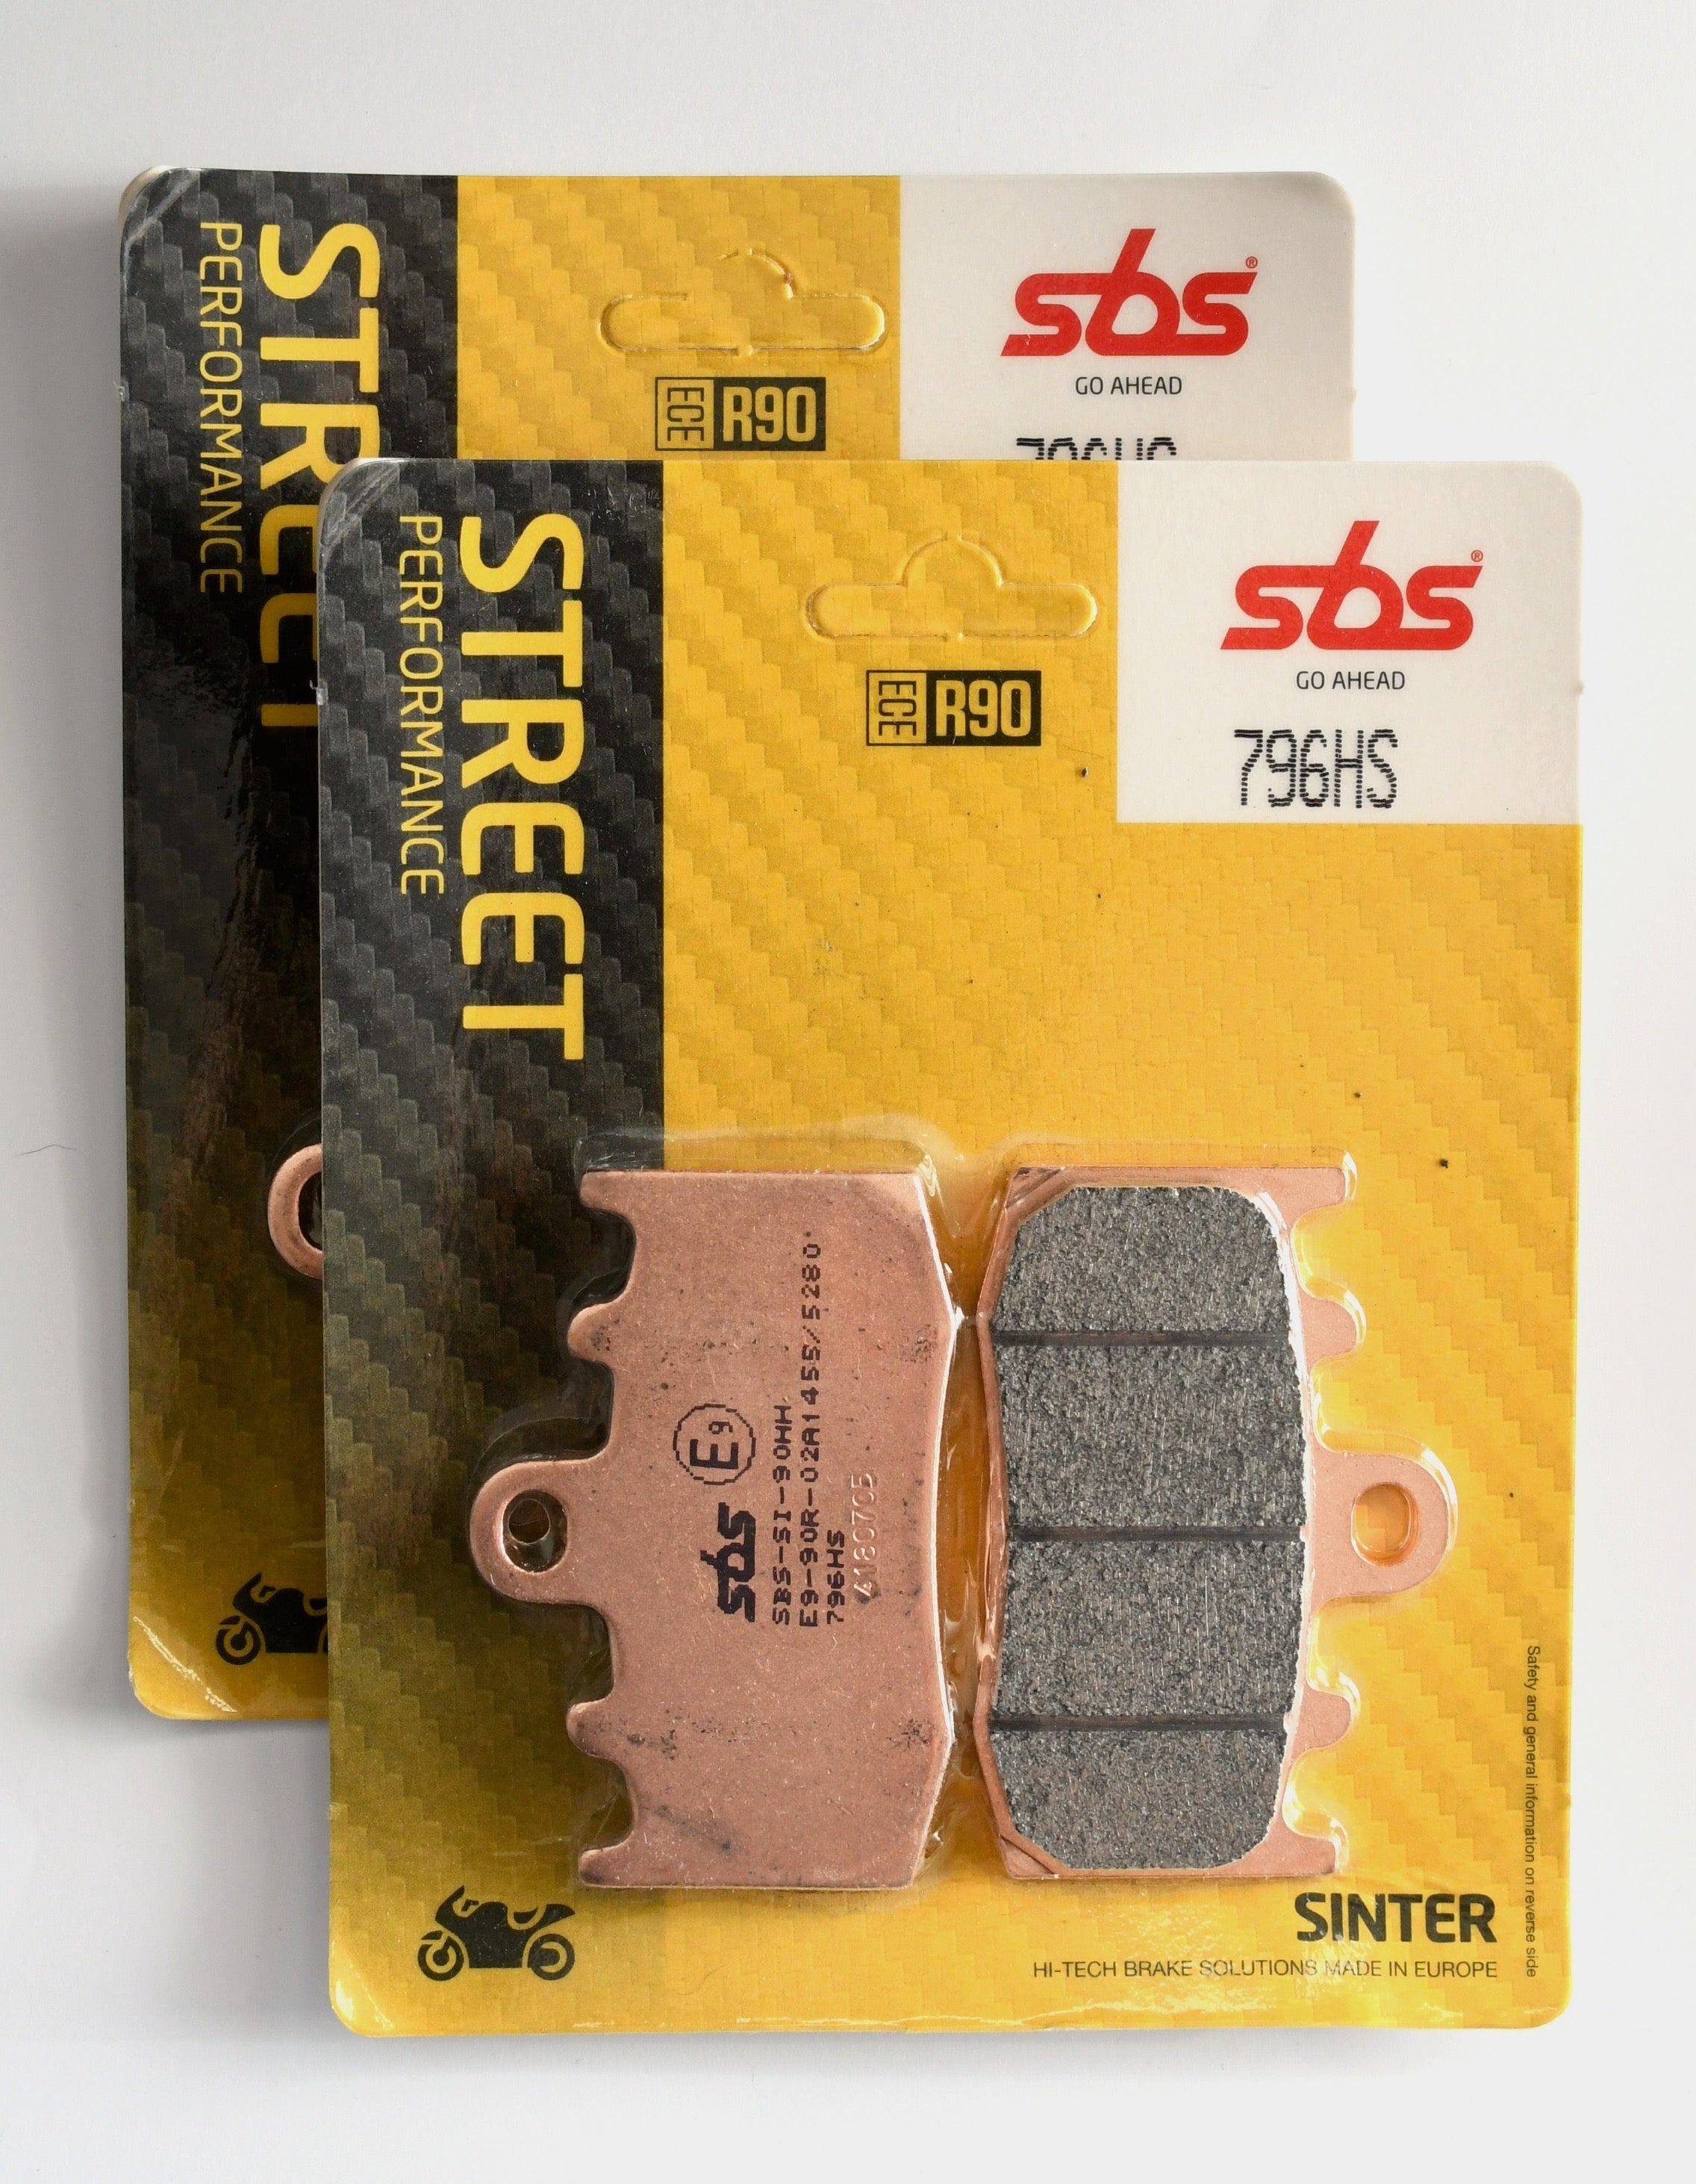 SBS 796 HS Street Sinter Brake Pads - 2 Sets